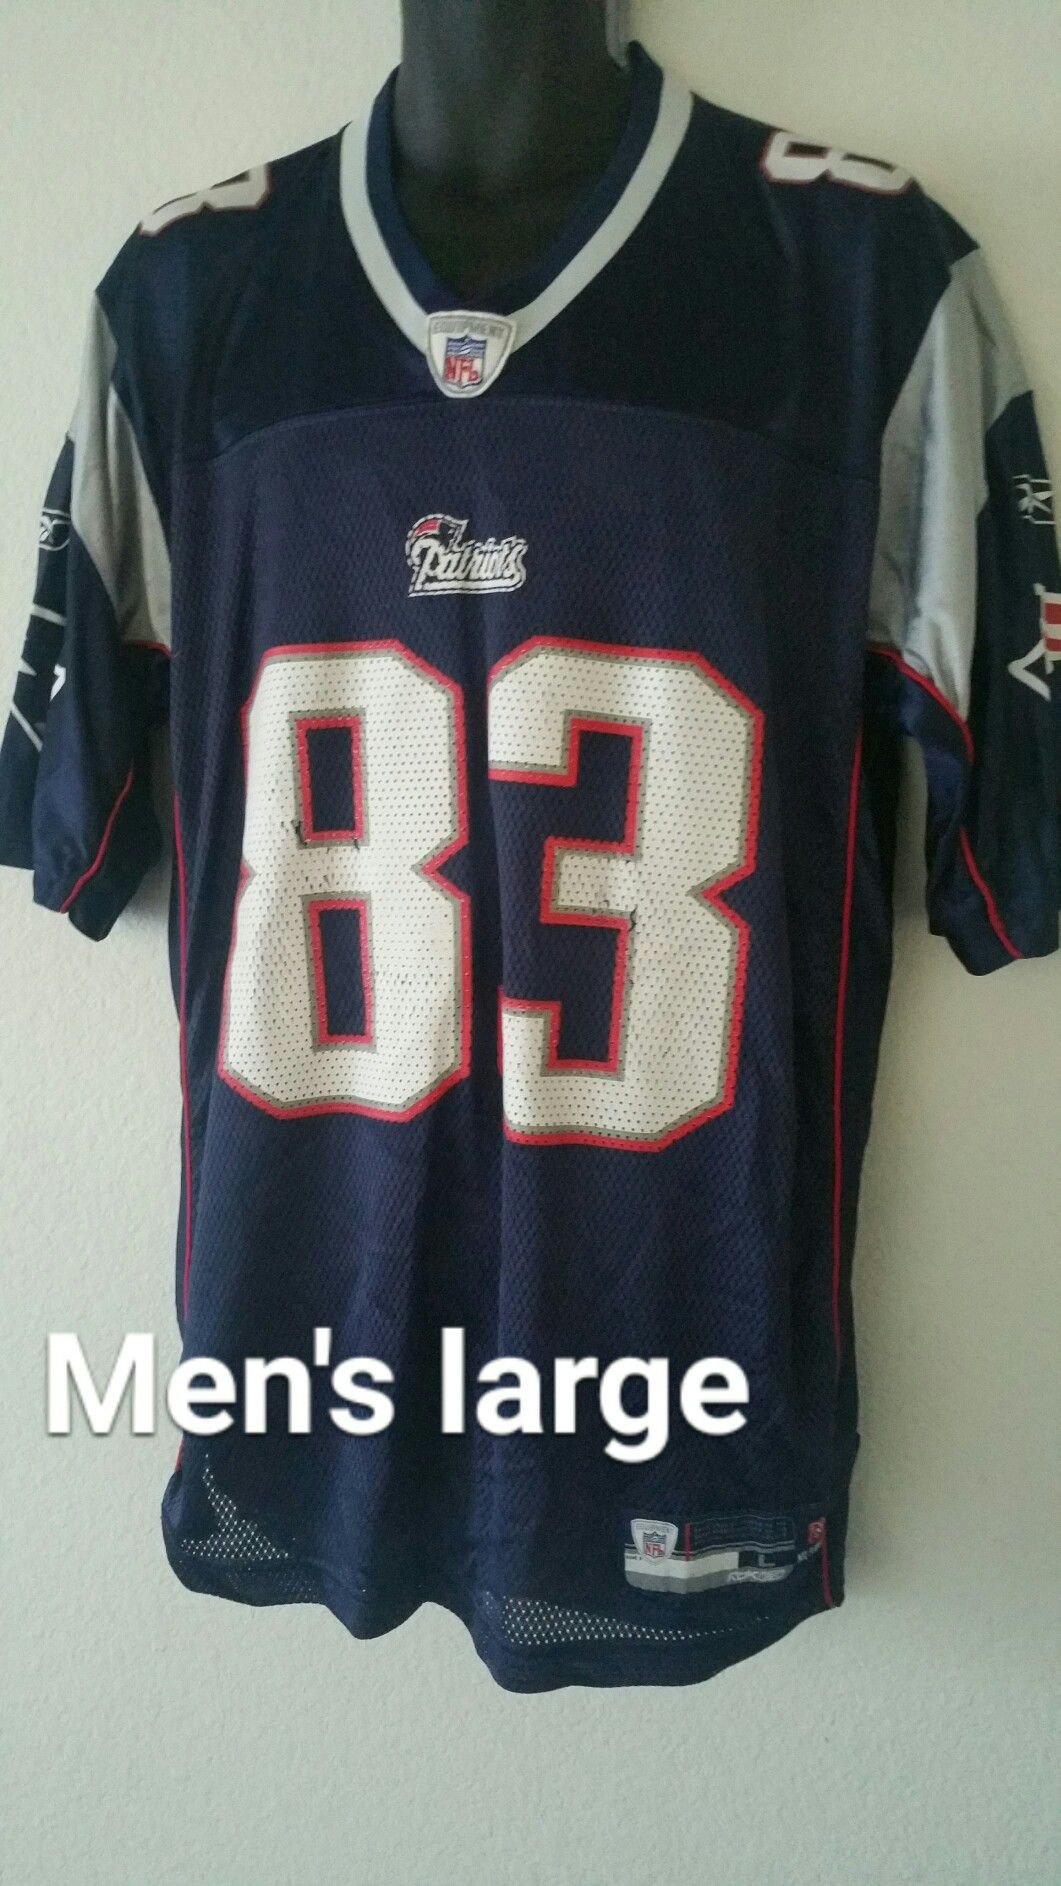 England Patriots Wes Welker men's large Jersey $15